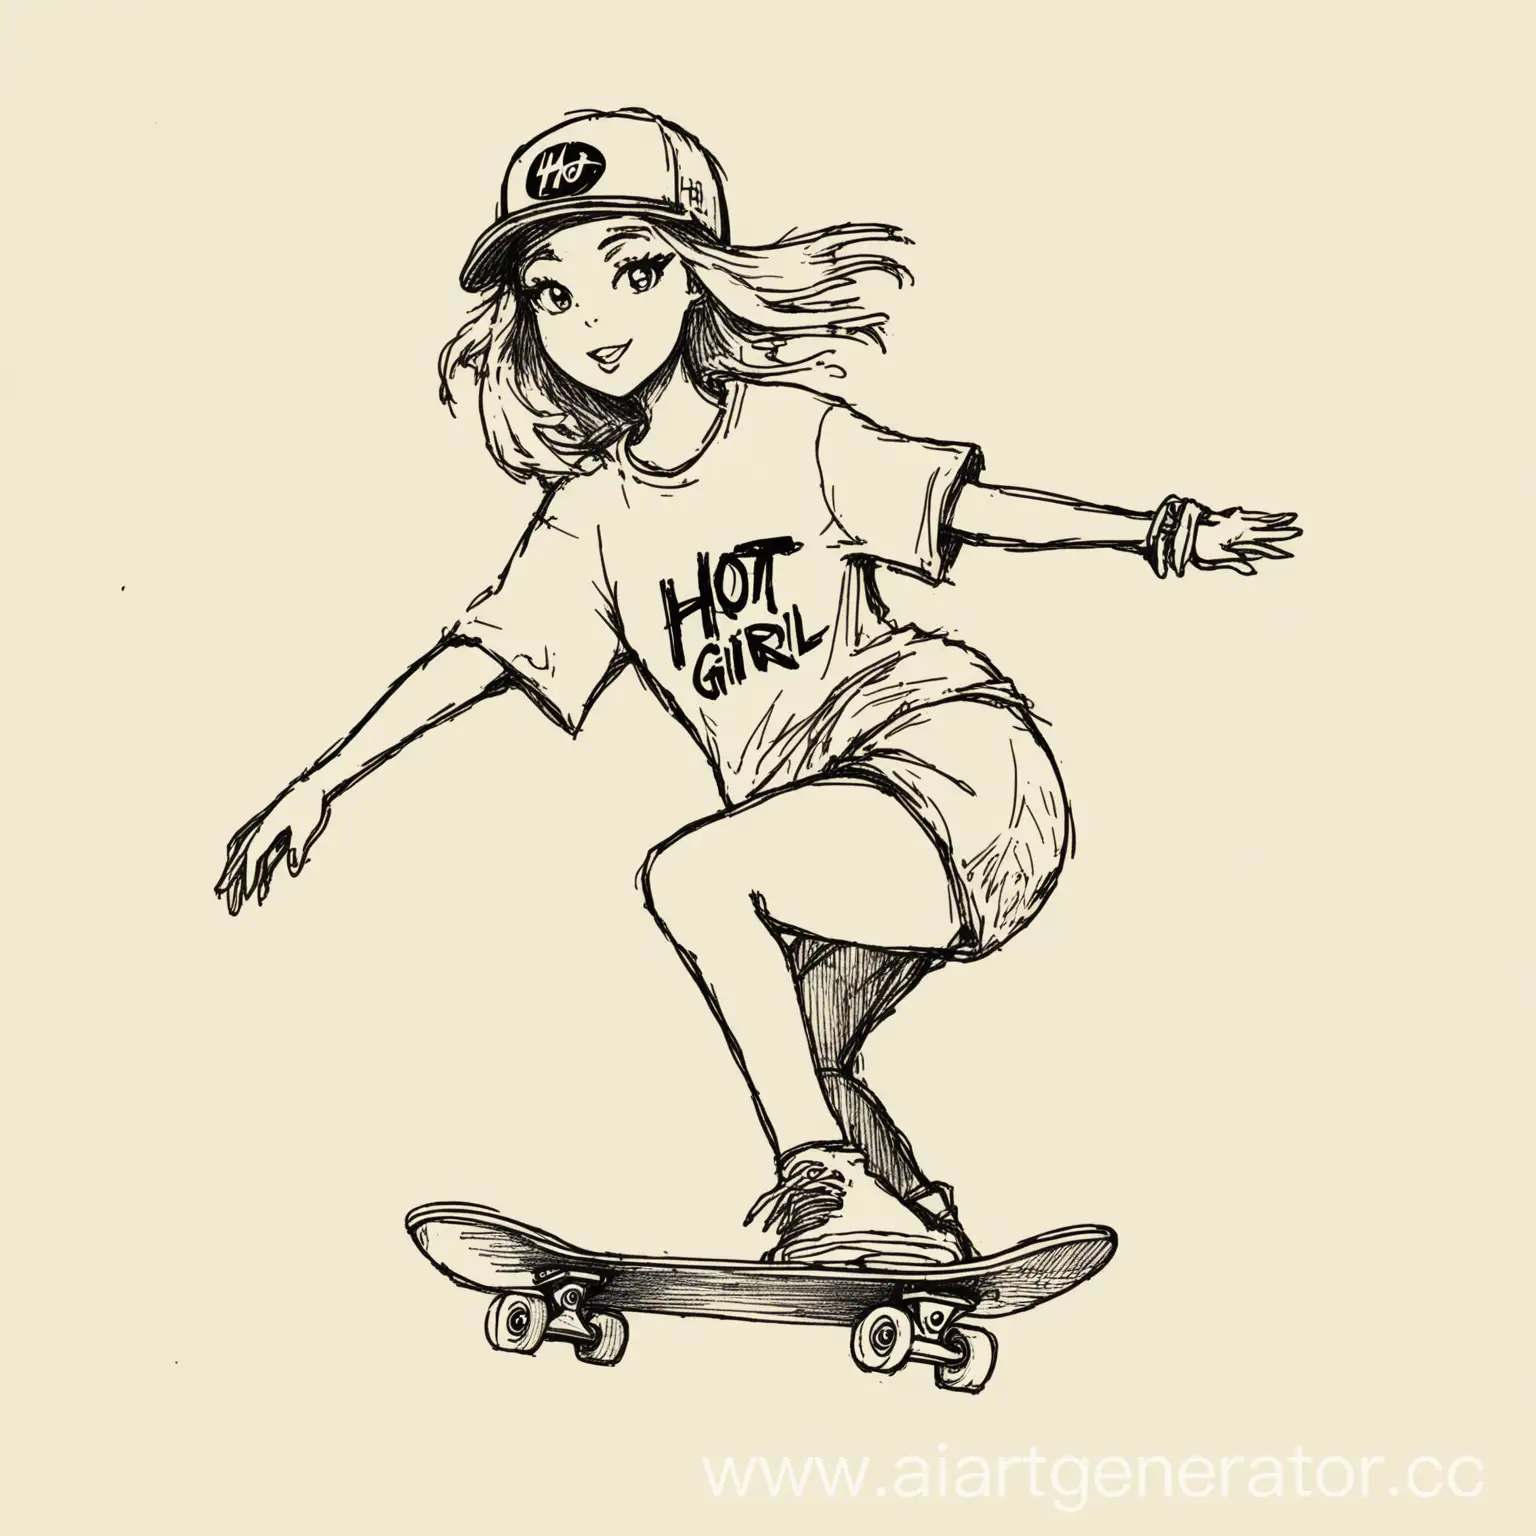 Sketch-of-Hot-Girl-Skateboarding-Logo-on-Skateboard-TShirt